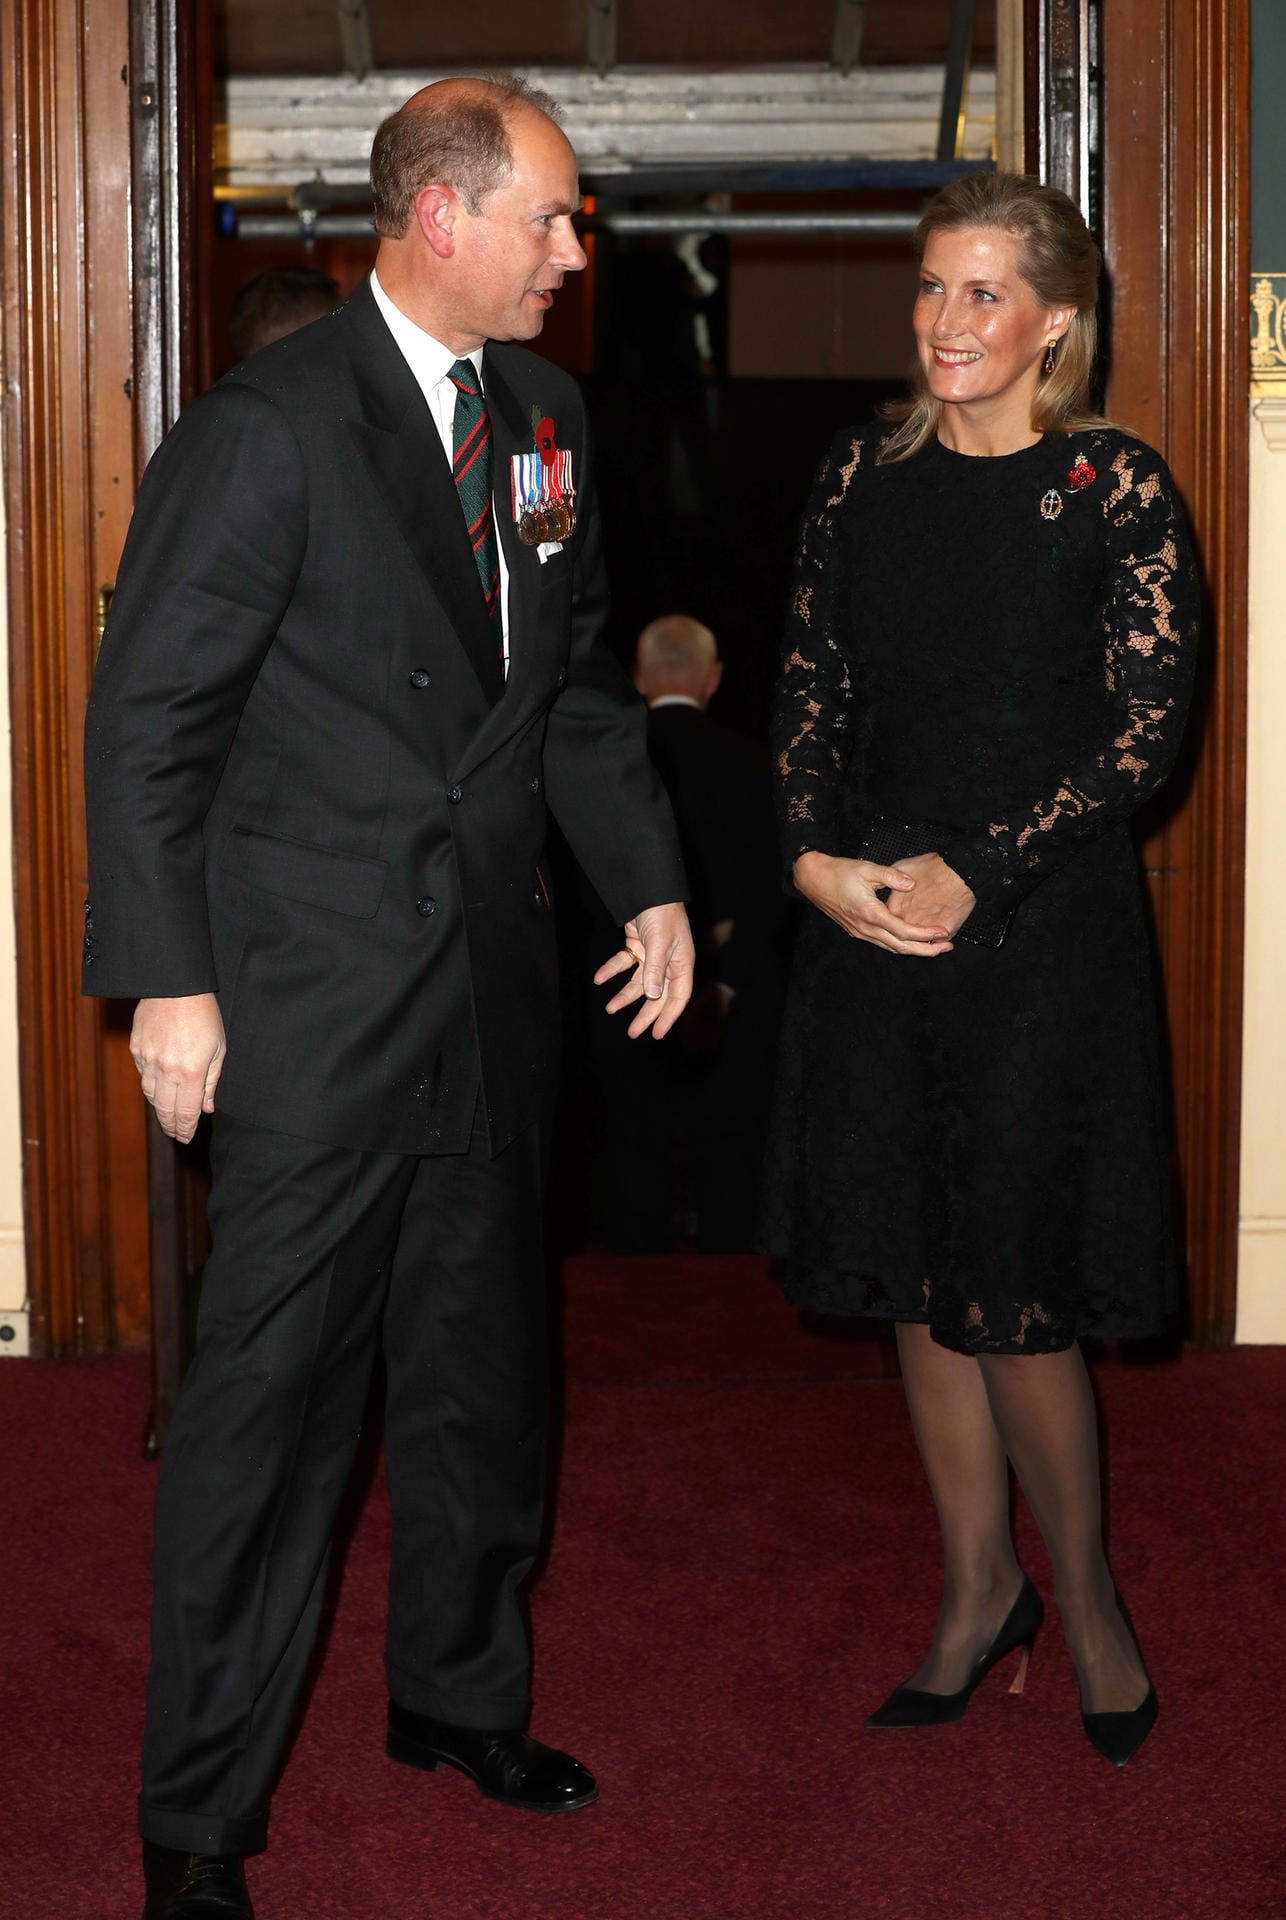 Prinz Edward und Herzogin Sophie: Während er einen dunklen Anzug trägt, strahlt sie einem Spitzen-Kleid.